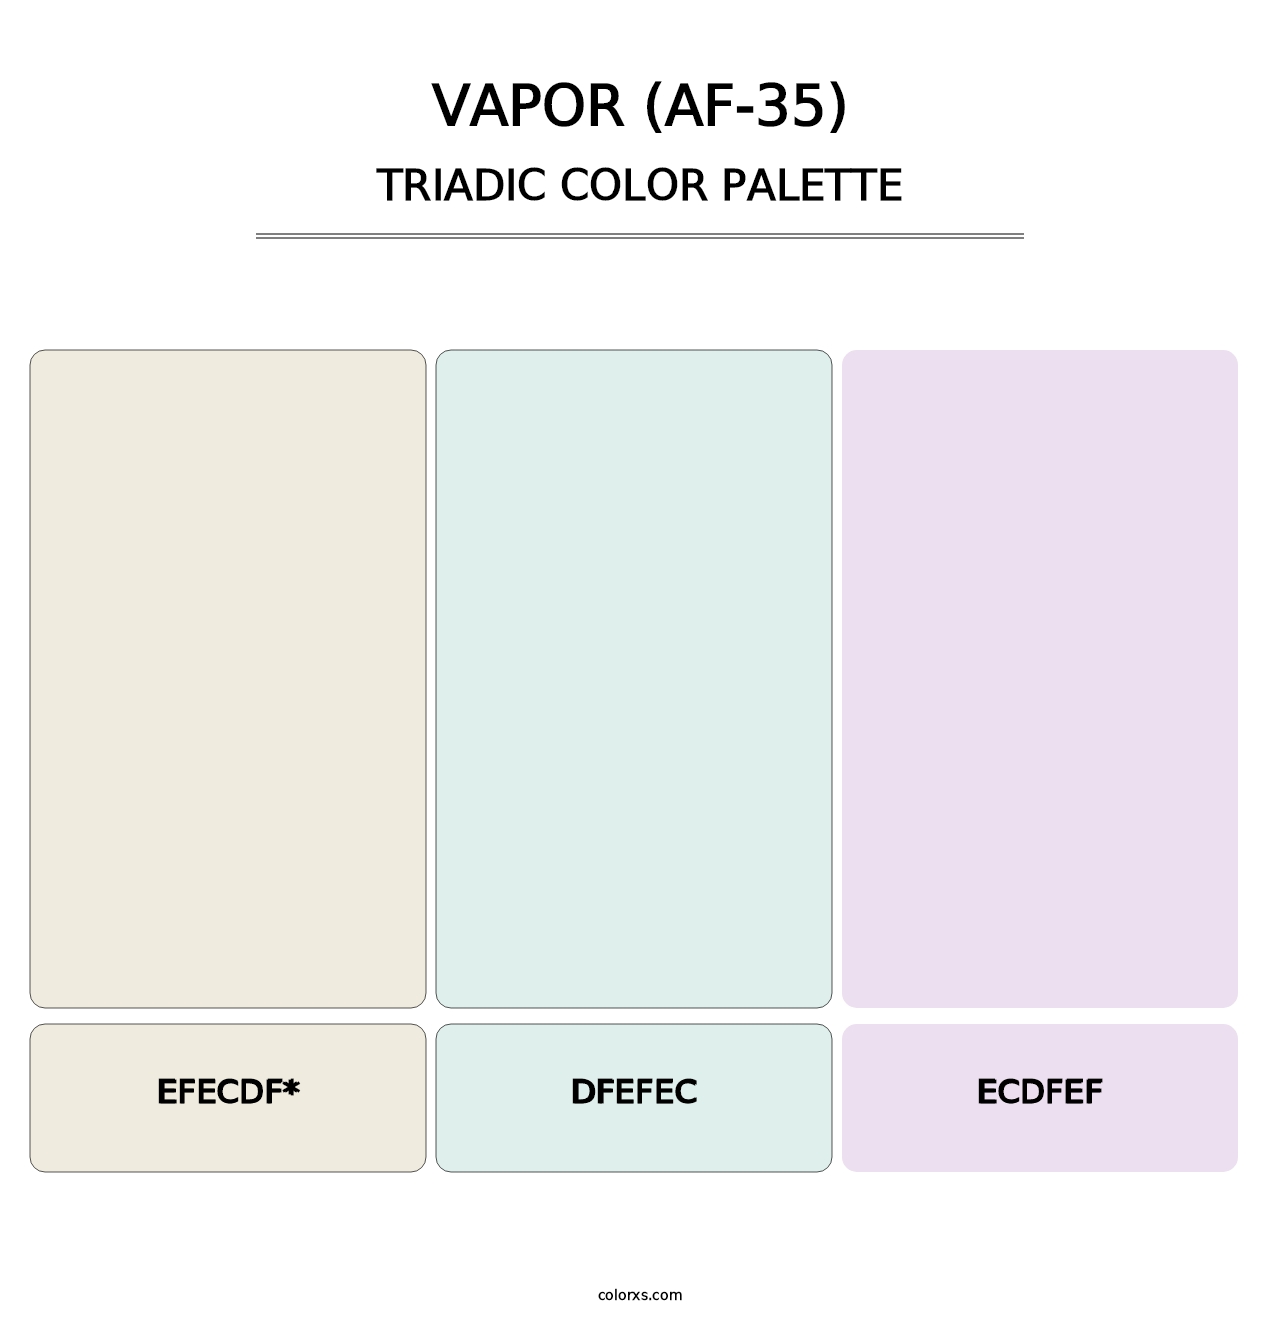 Vapor (AF-35) - Triadic Color Palette